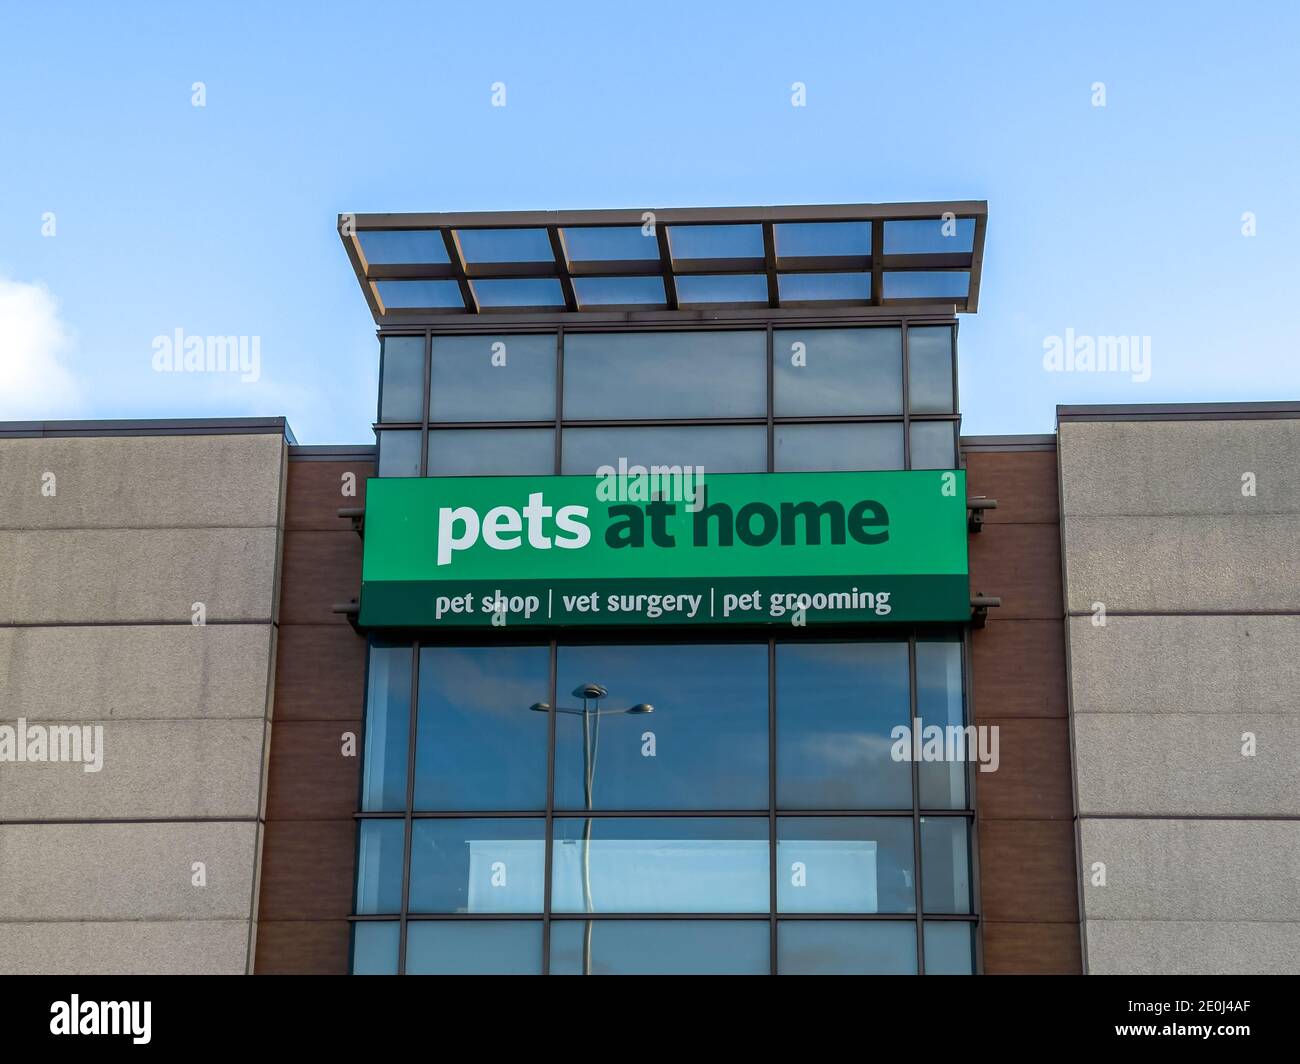 Belfast, Irlande du Nord - 19 décembre 2020 : le panneau pour les animaux domestiques à la maison Banque D'Images